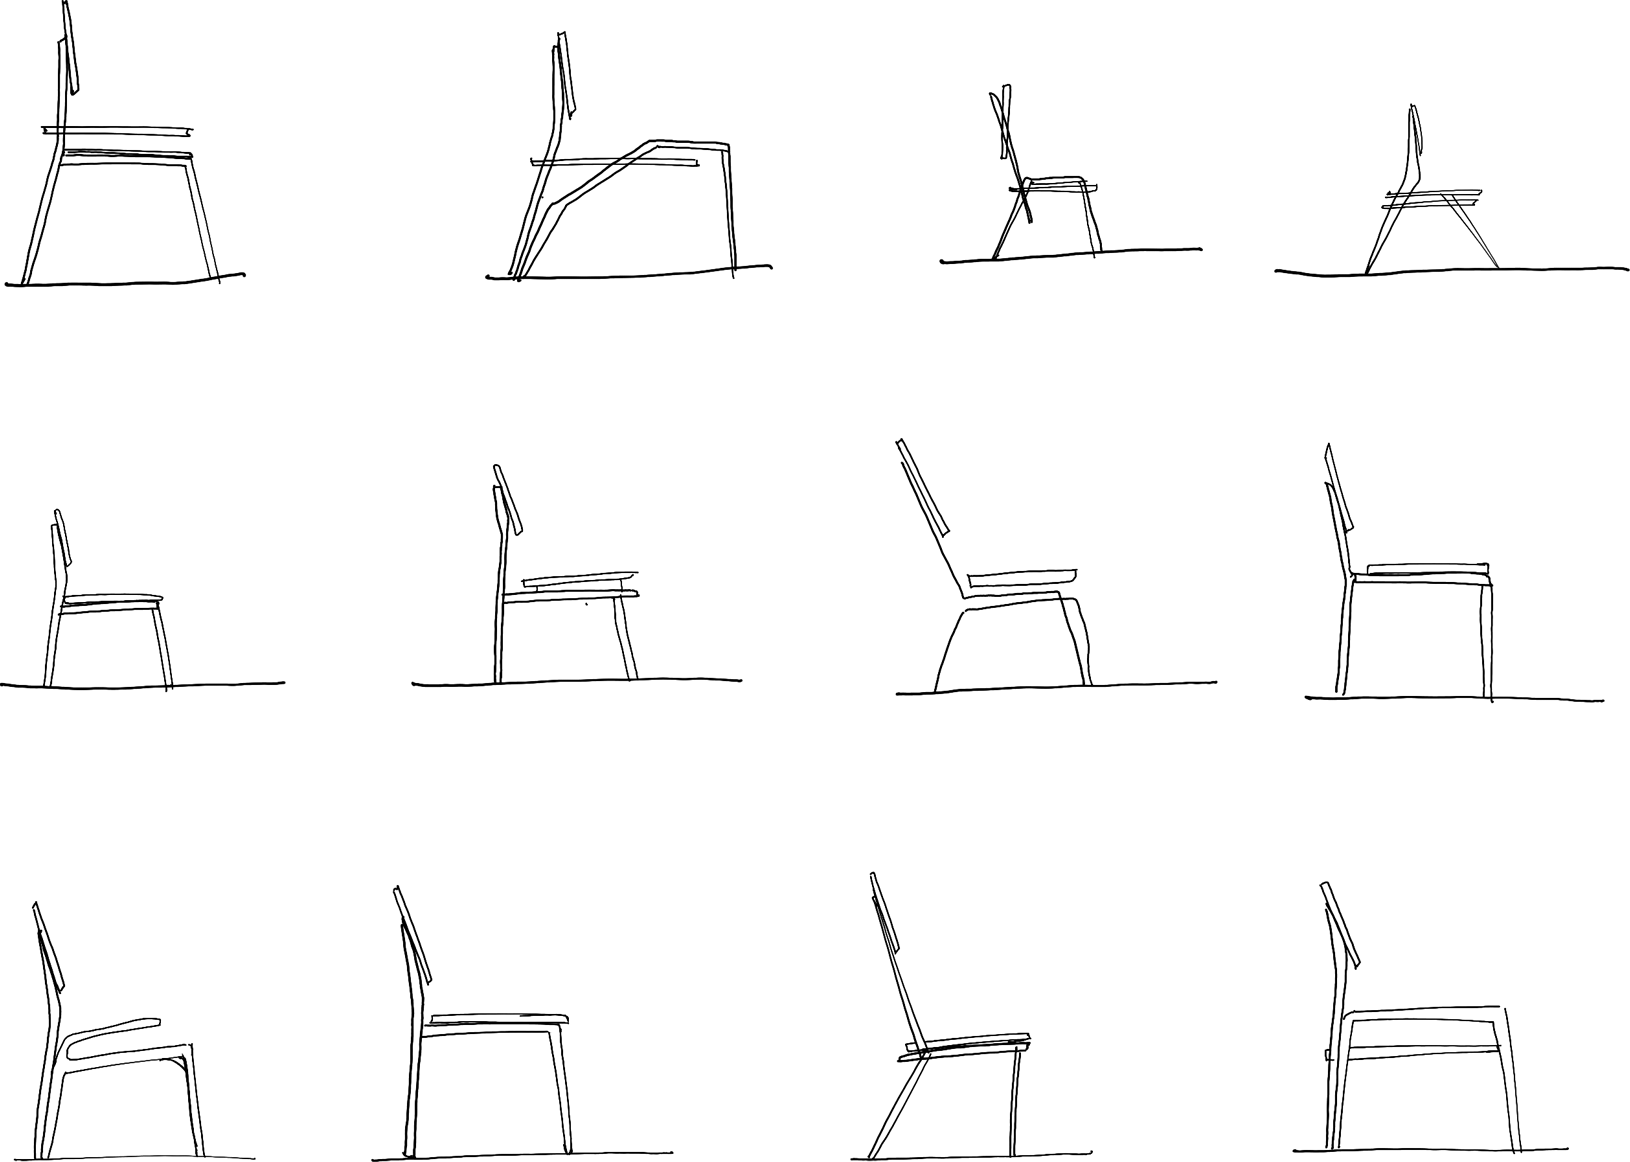 chair-9